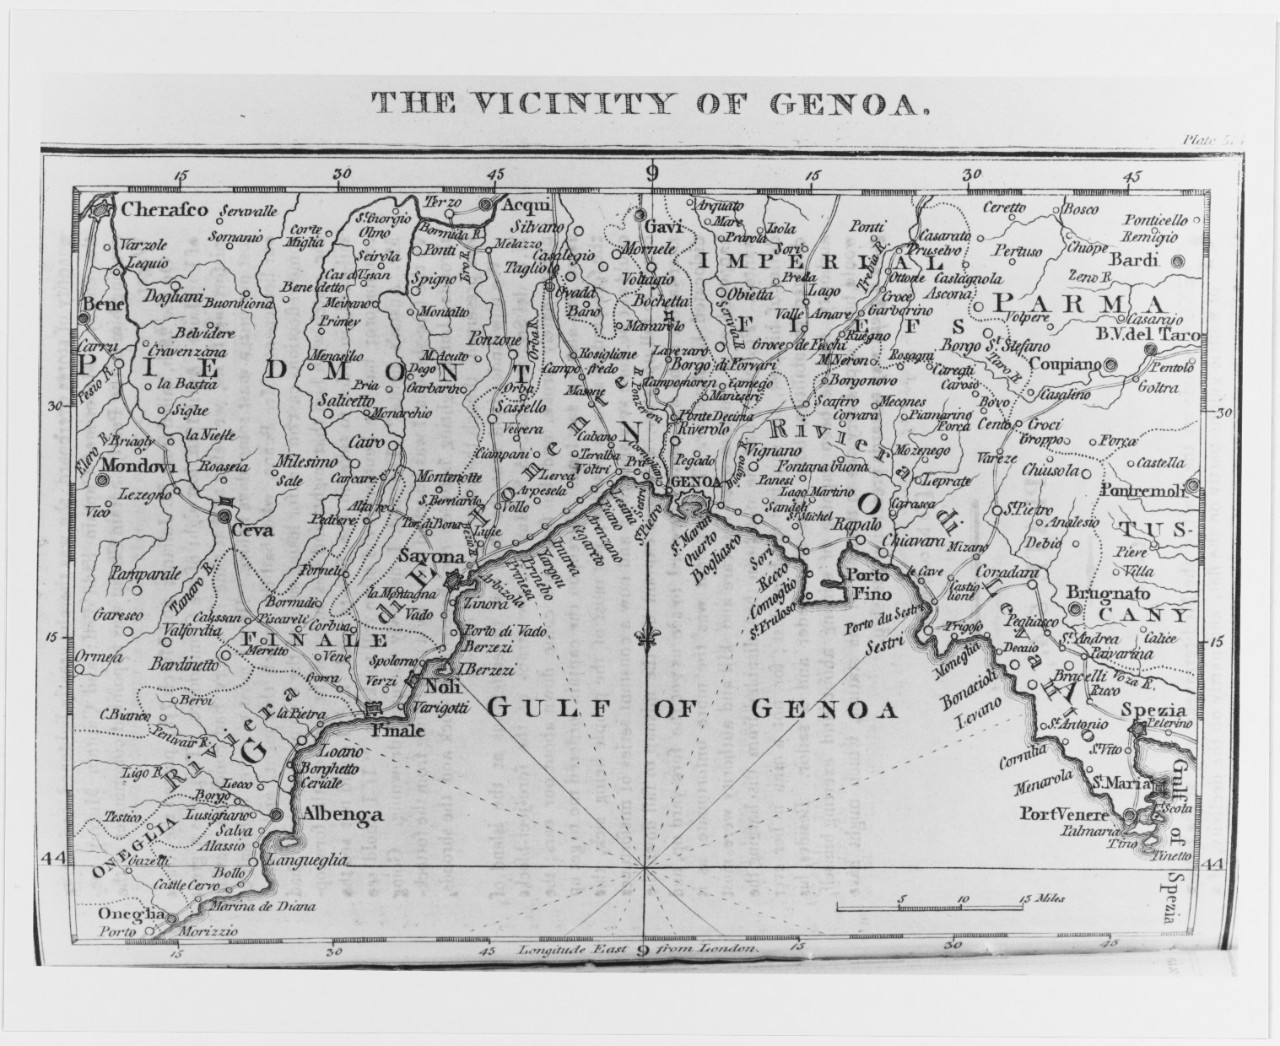 "The Vicinity of Genoa.", Italy. Map, 1818